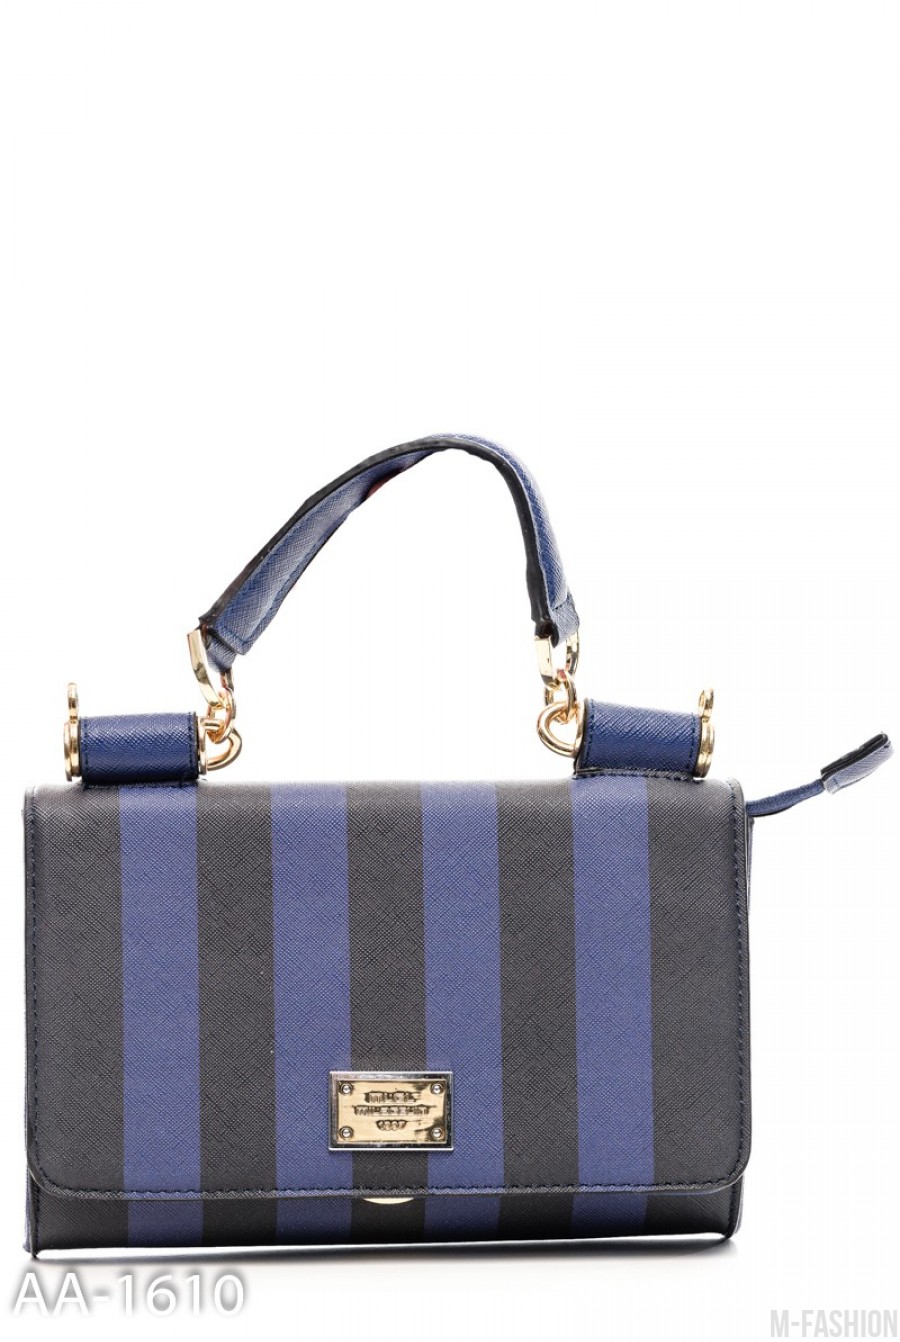 Жесткая сумочка в синюю и черную полоску - Фото 1